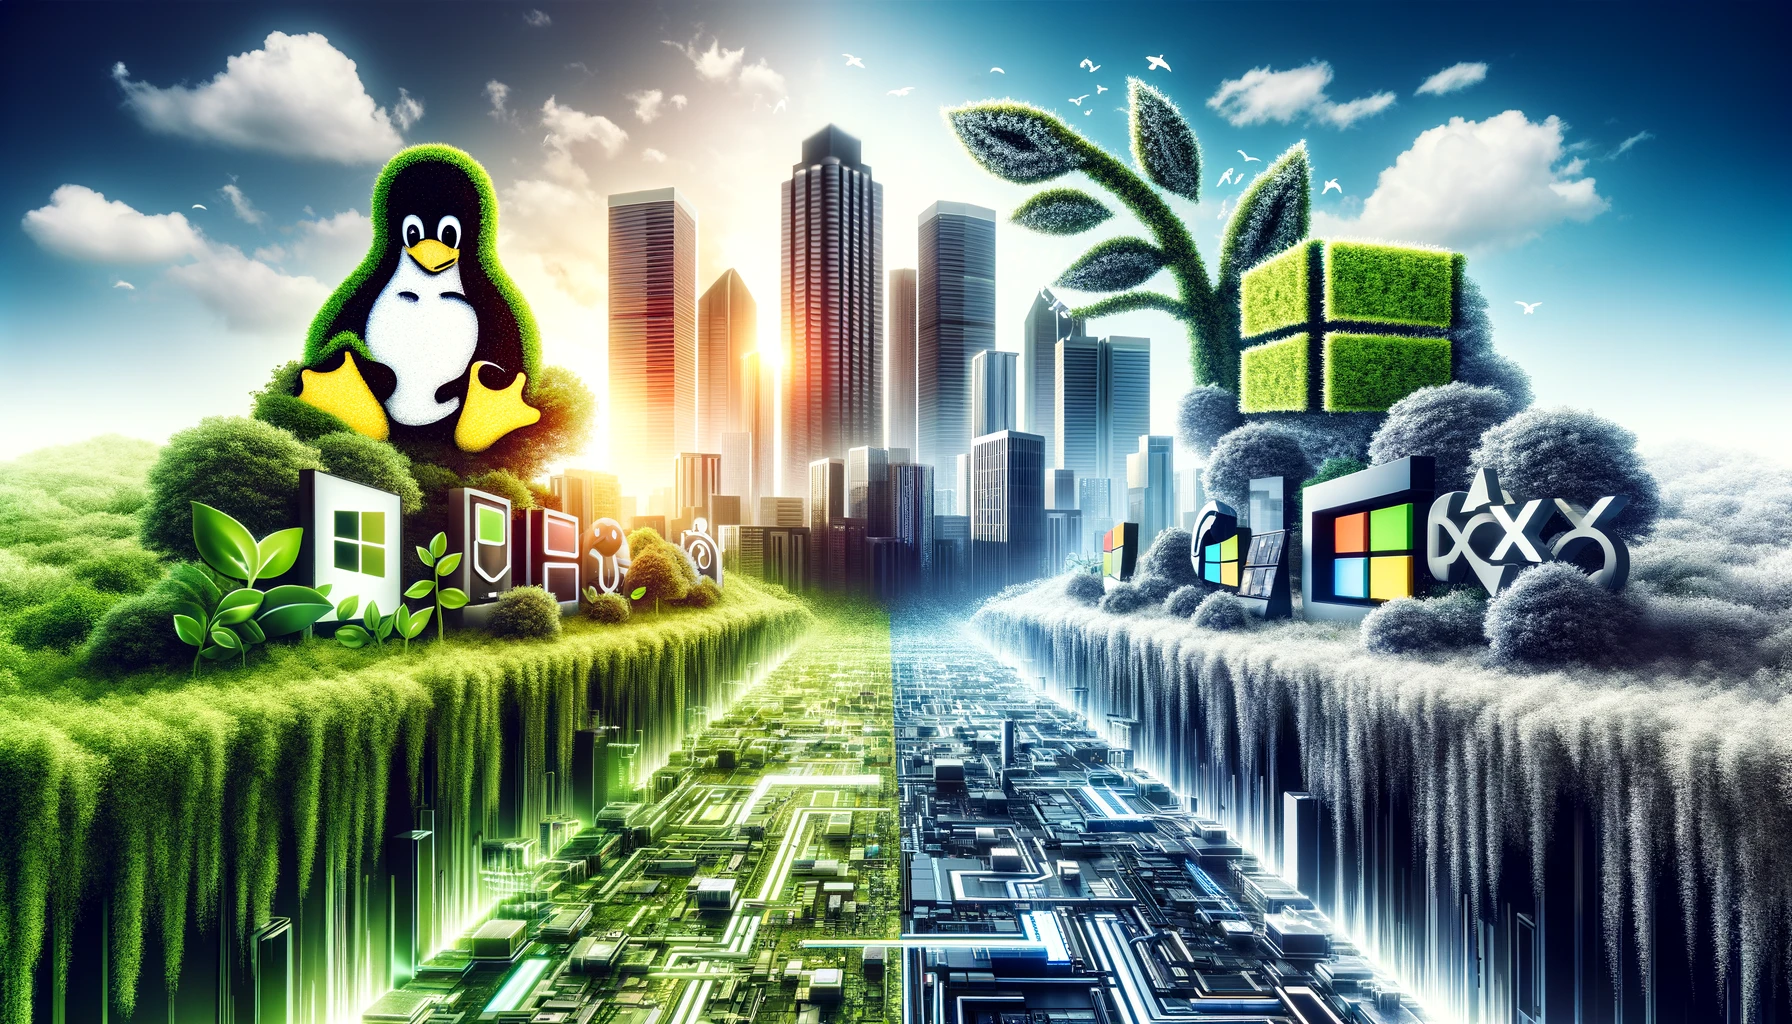 Symbolische Darstellung der Auseinandersetzung zwischen Linux und Microsoft in einer futuristischen Stadtlandschaft.